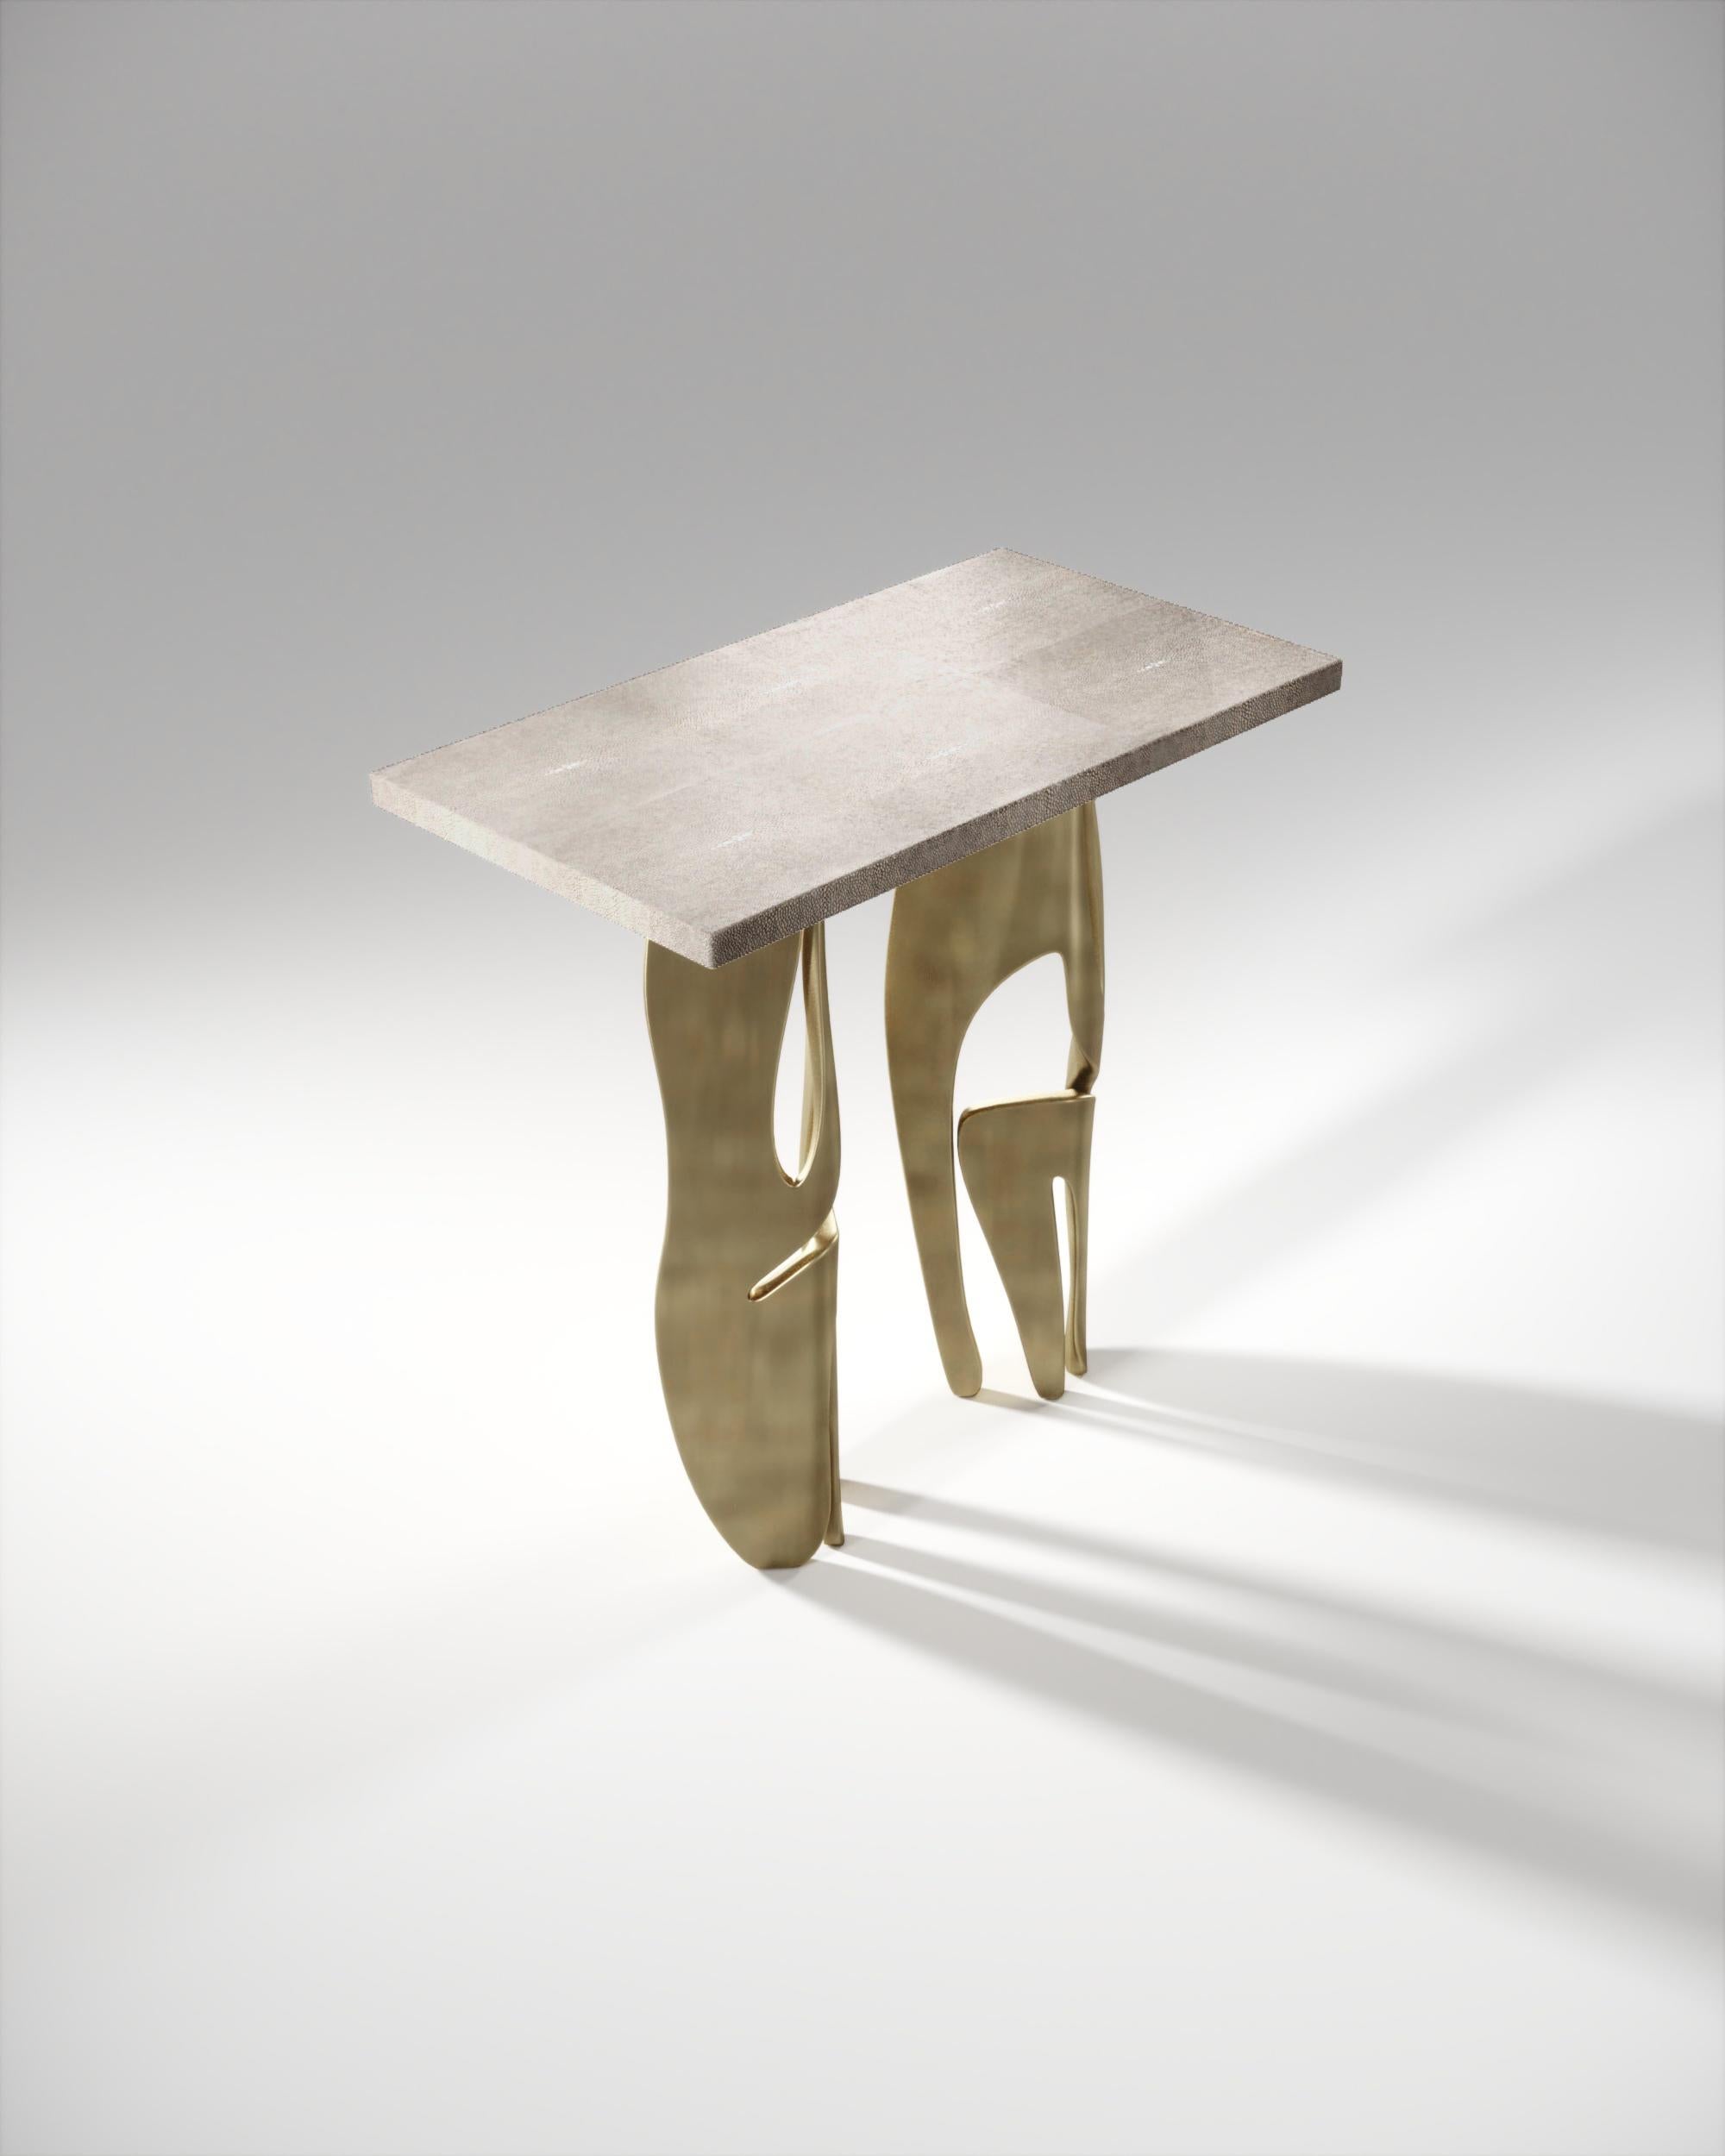 La table d'appoint rectangle Metropolis de R&Y Augousti est à la fois spectaculaire et organique grâce à son design unique. Le plateau incrusté de galuchat crème repose sur une paire de pieds éthérés et sculpturaux en laiton bronze-patina. Cette